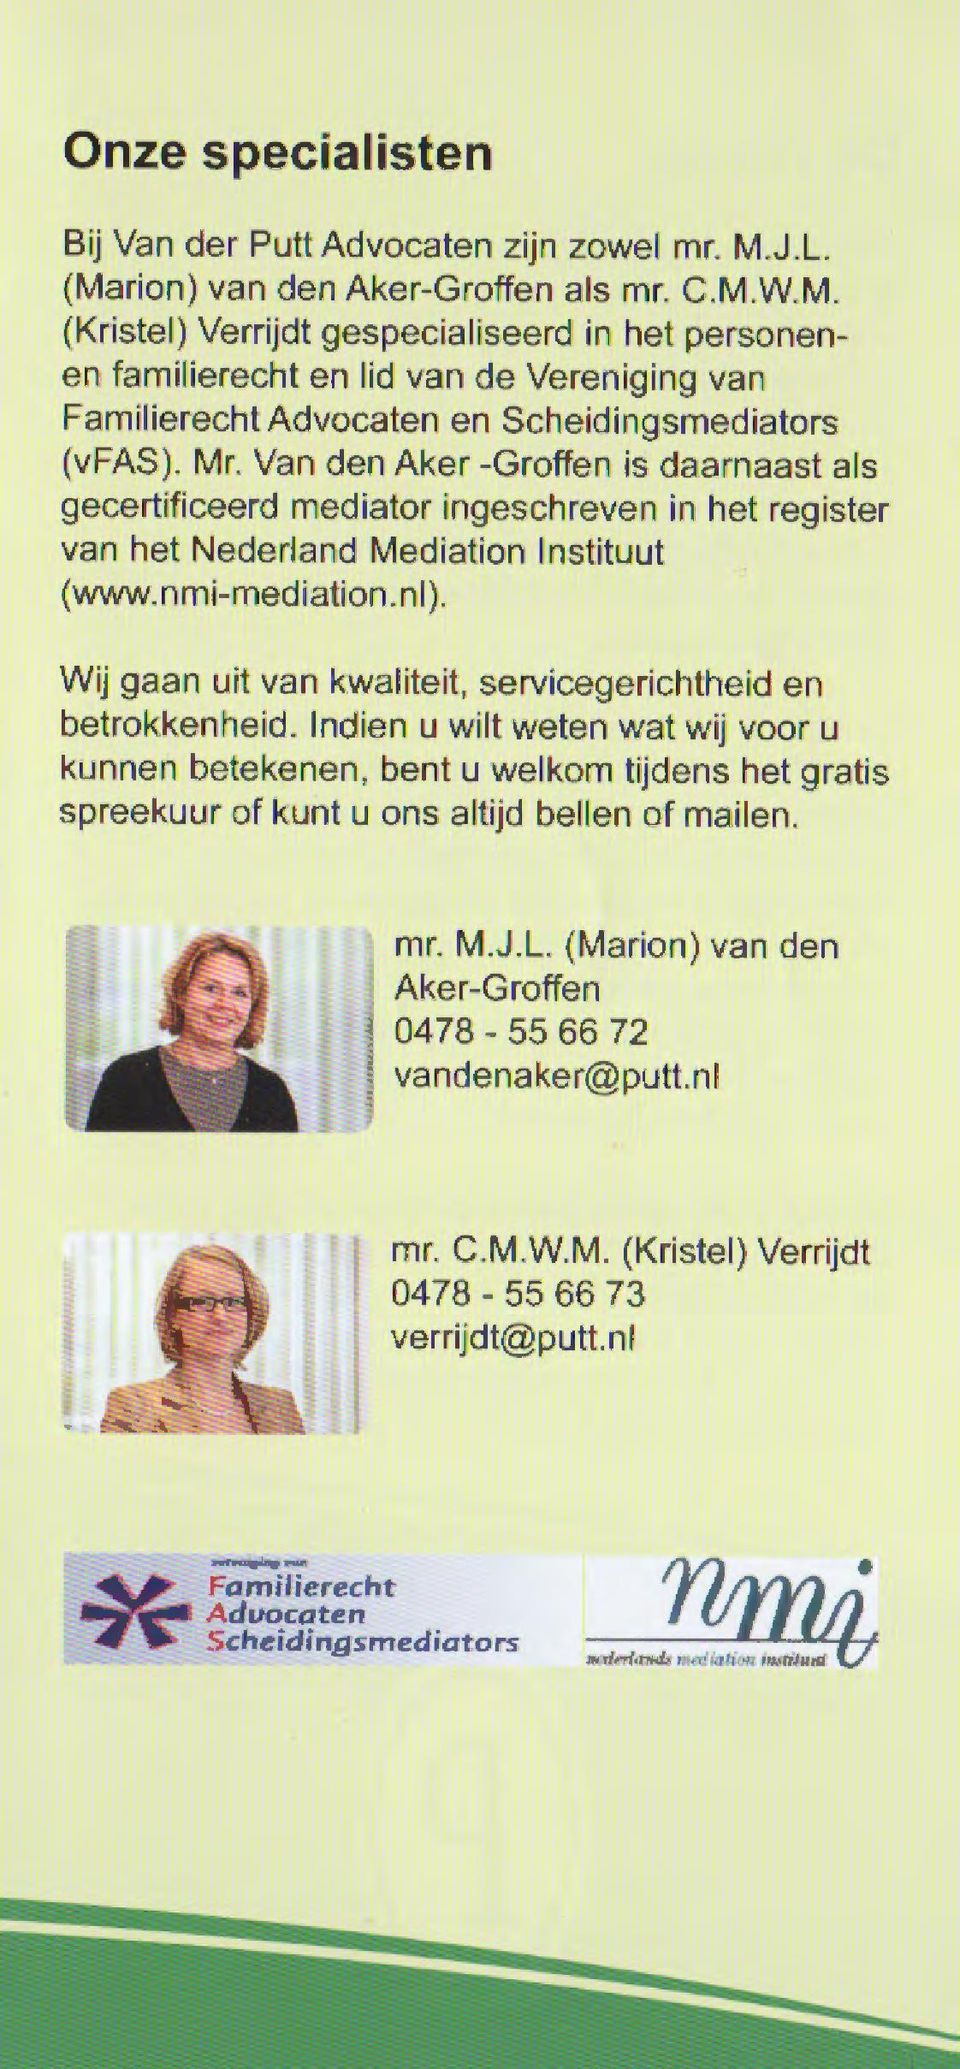 Mr. Van den Aker -Groffen is daarnaast als gecertificeerd mediator ingeschreven in het register van het Nederland Mediation lnstituut (www.nmi-mediation.nl).